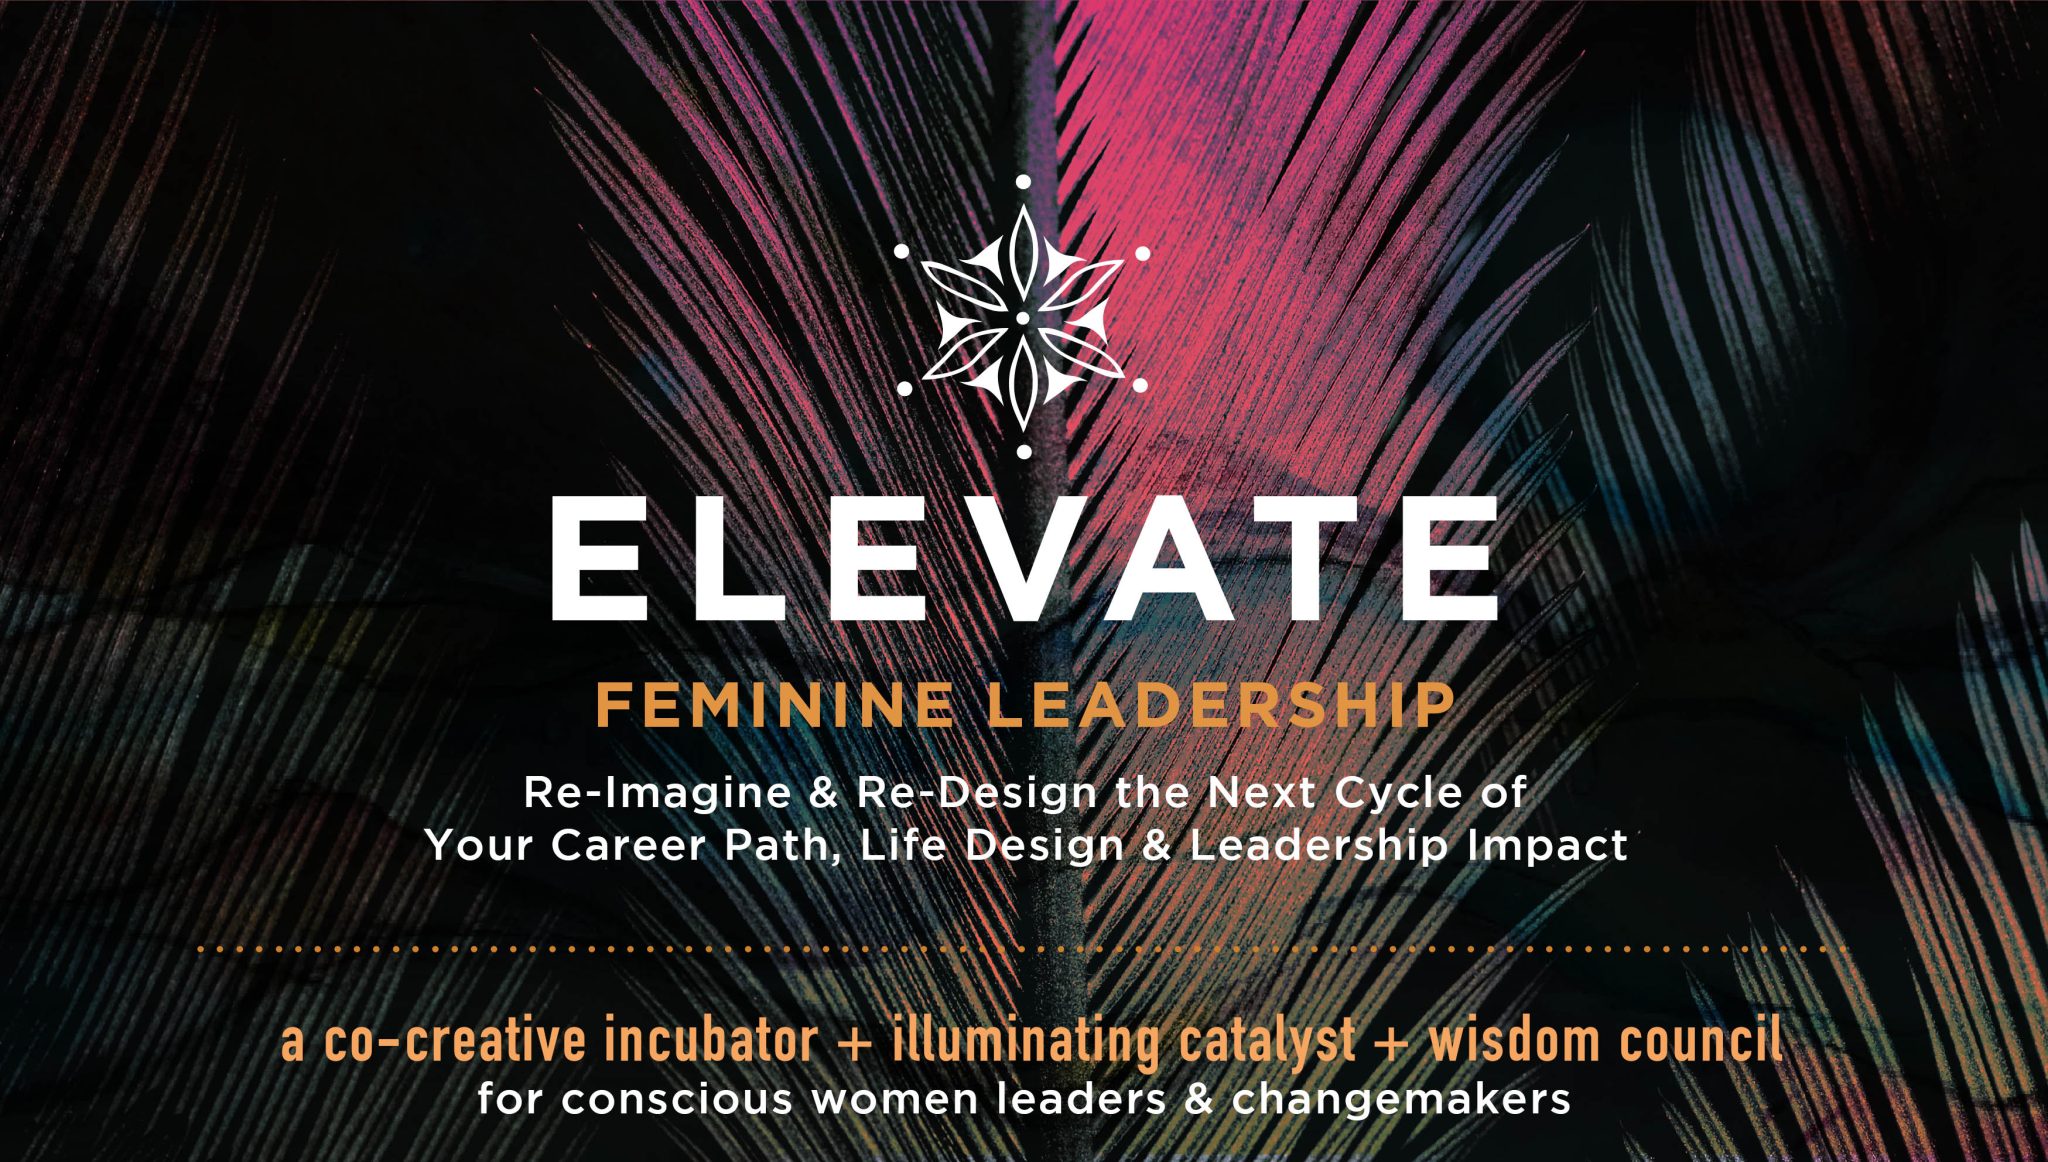 Elevate Feminine Leadership Career, Life & Leadership Design with Christine Arylo